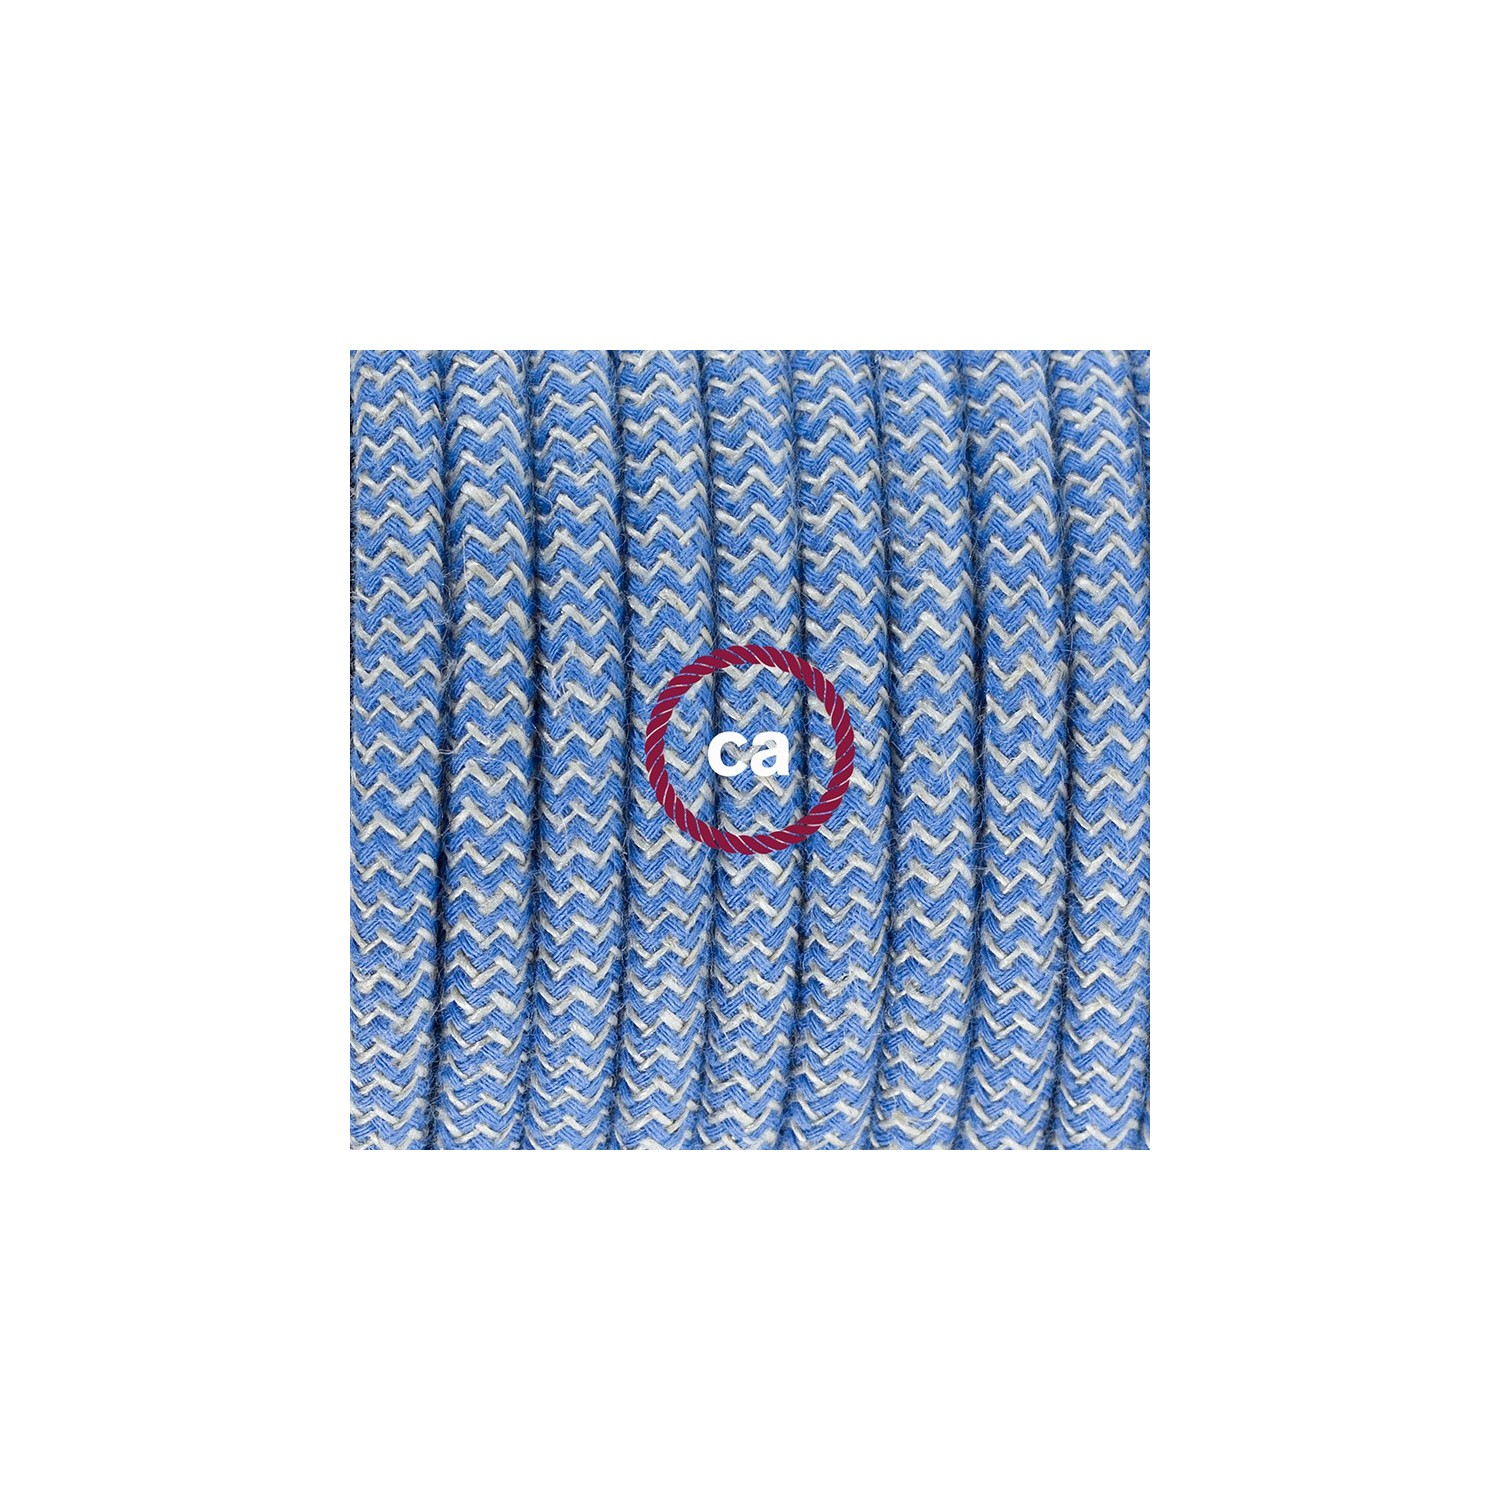 Ronde flexibele textielkabel van katoen met schakelaar en stekker. RD75 - Steward blauw zigzag en linnen 1,80 m.